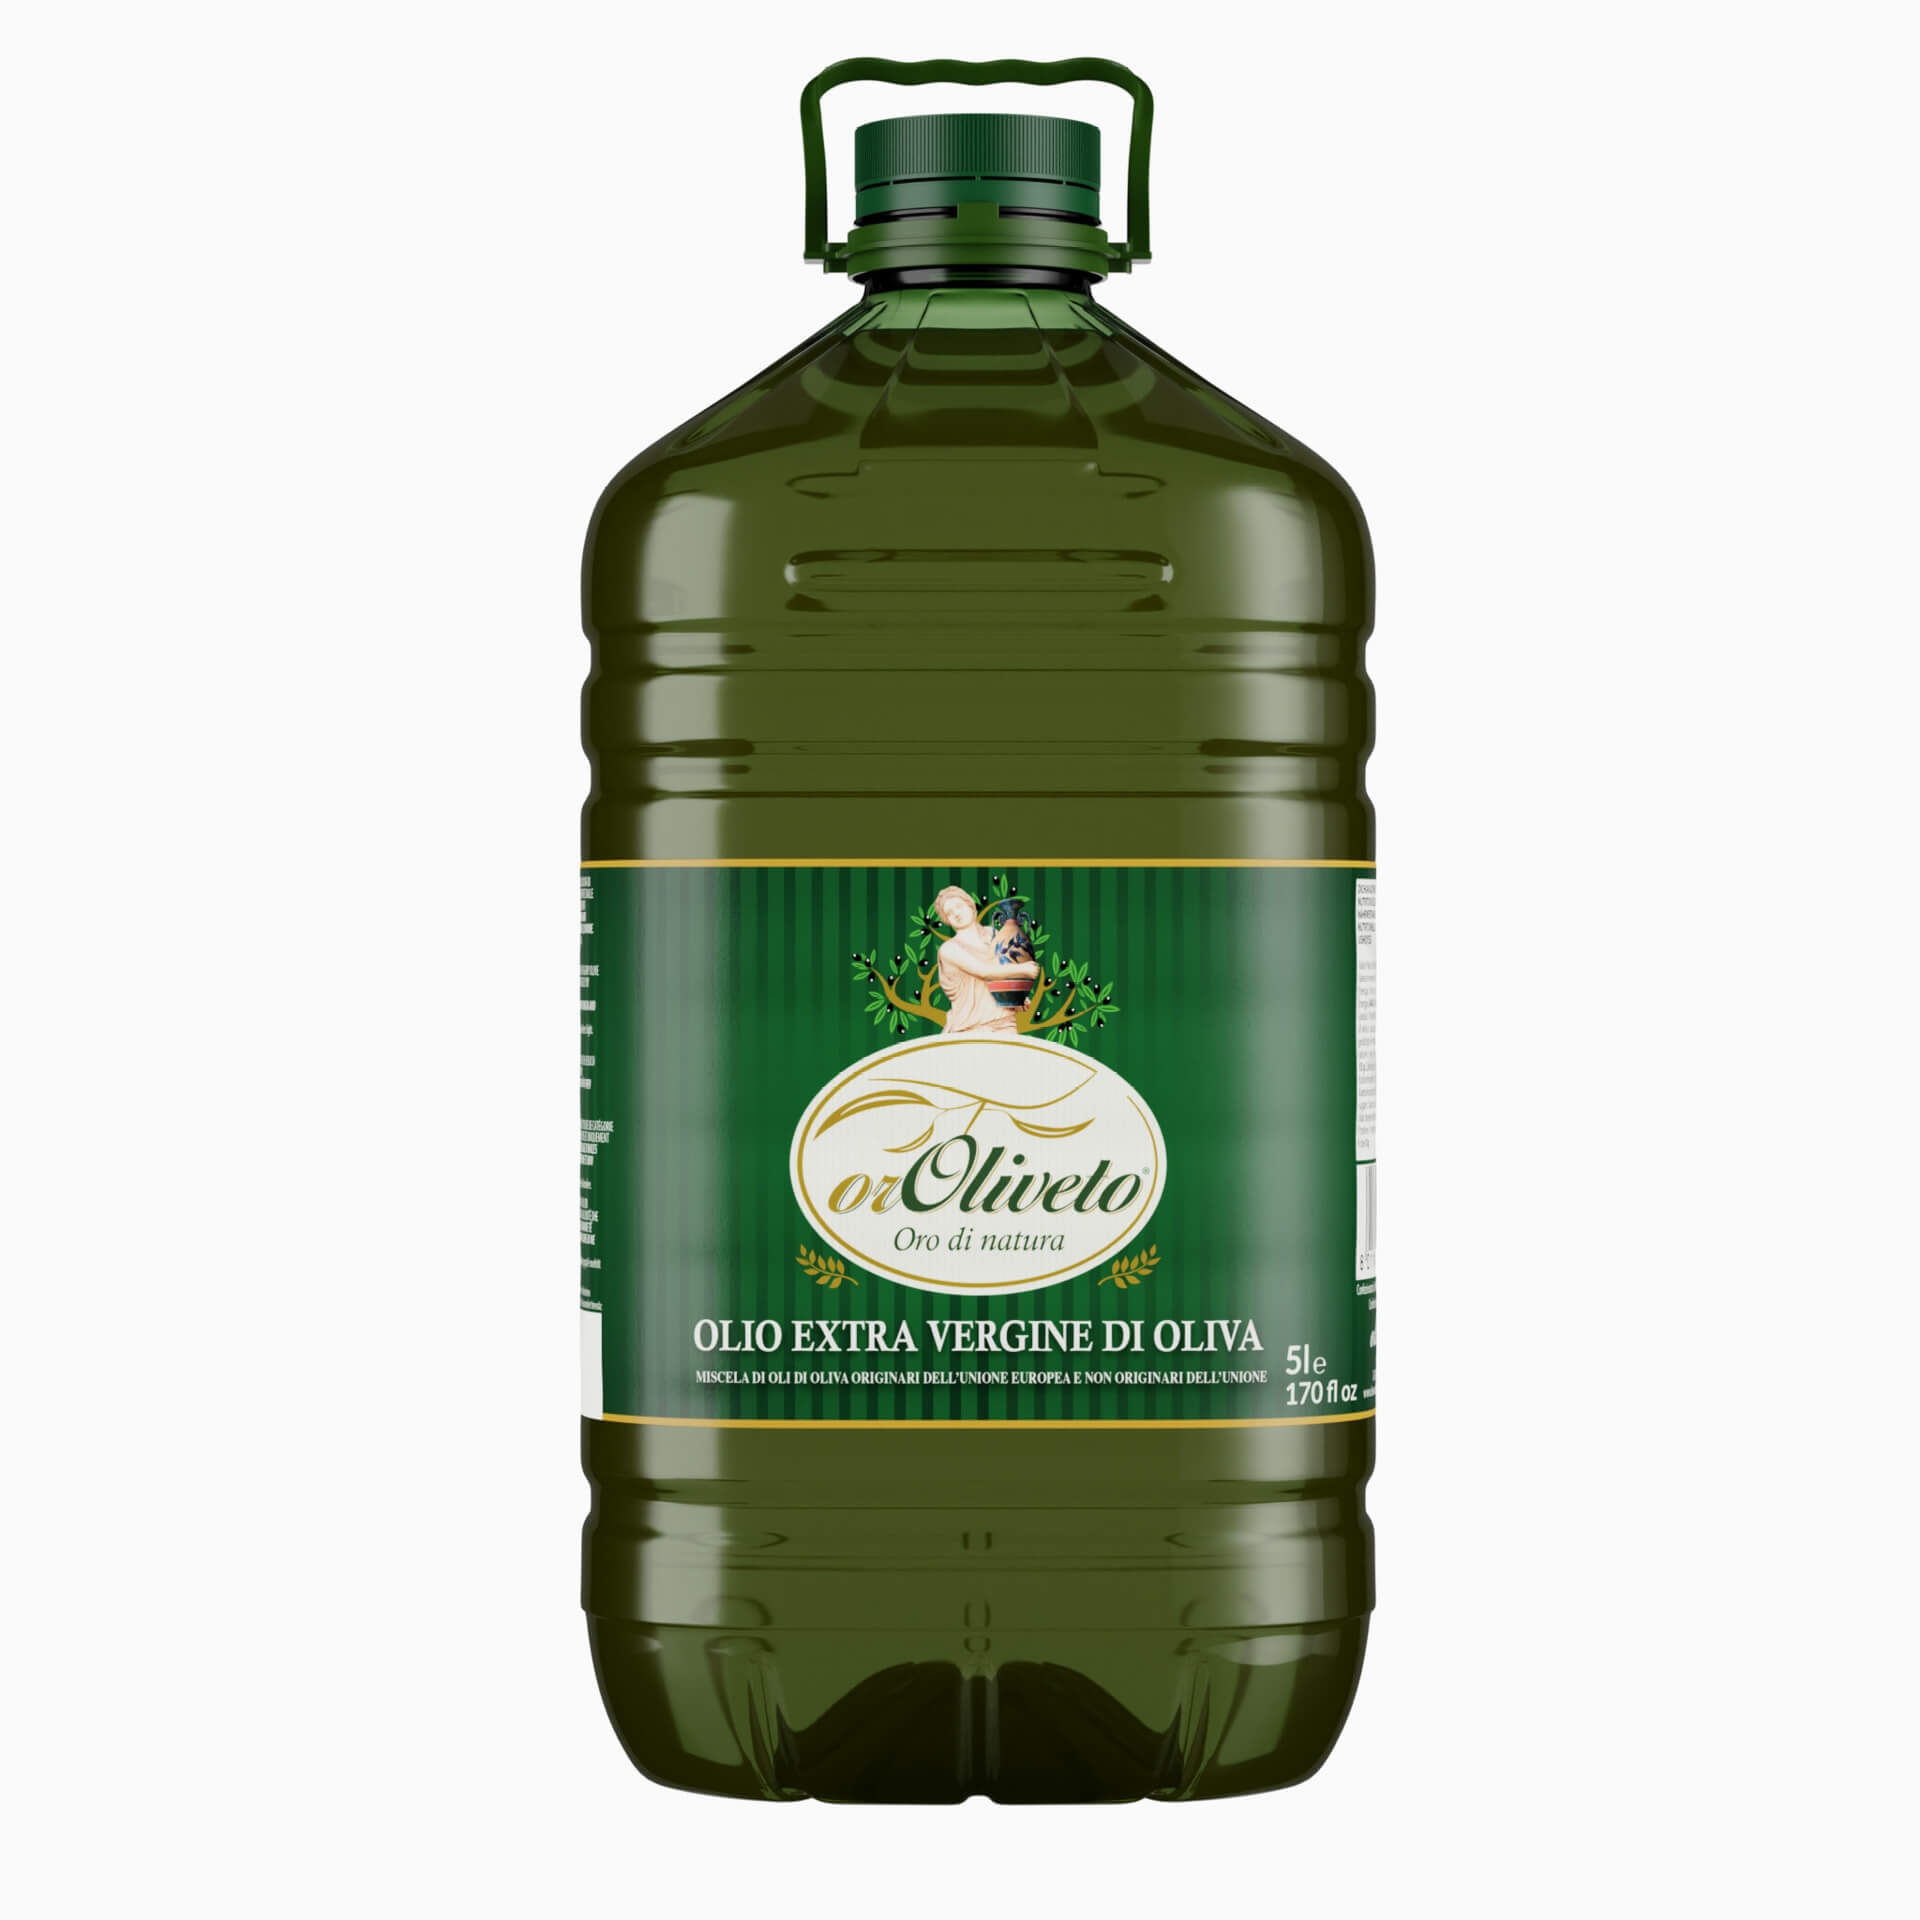 EU and Non-EU Extra Virgin Olive Oil